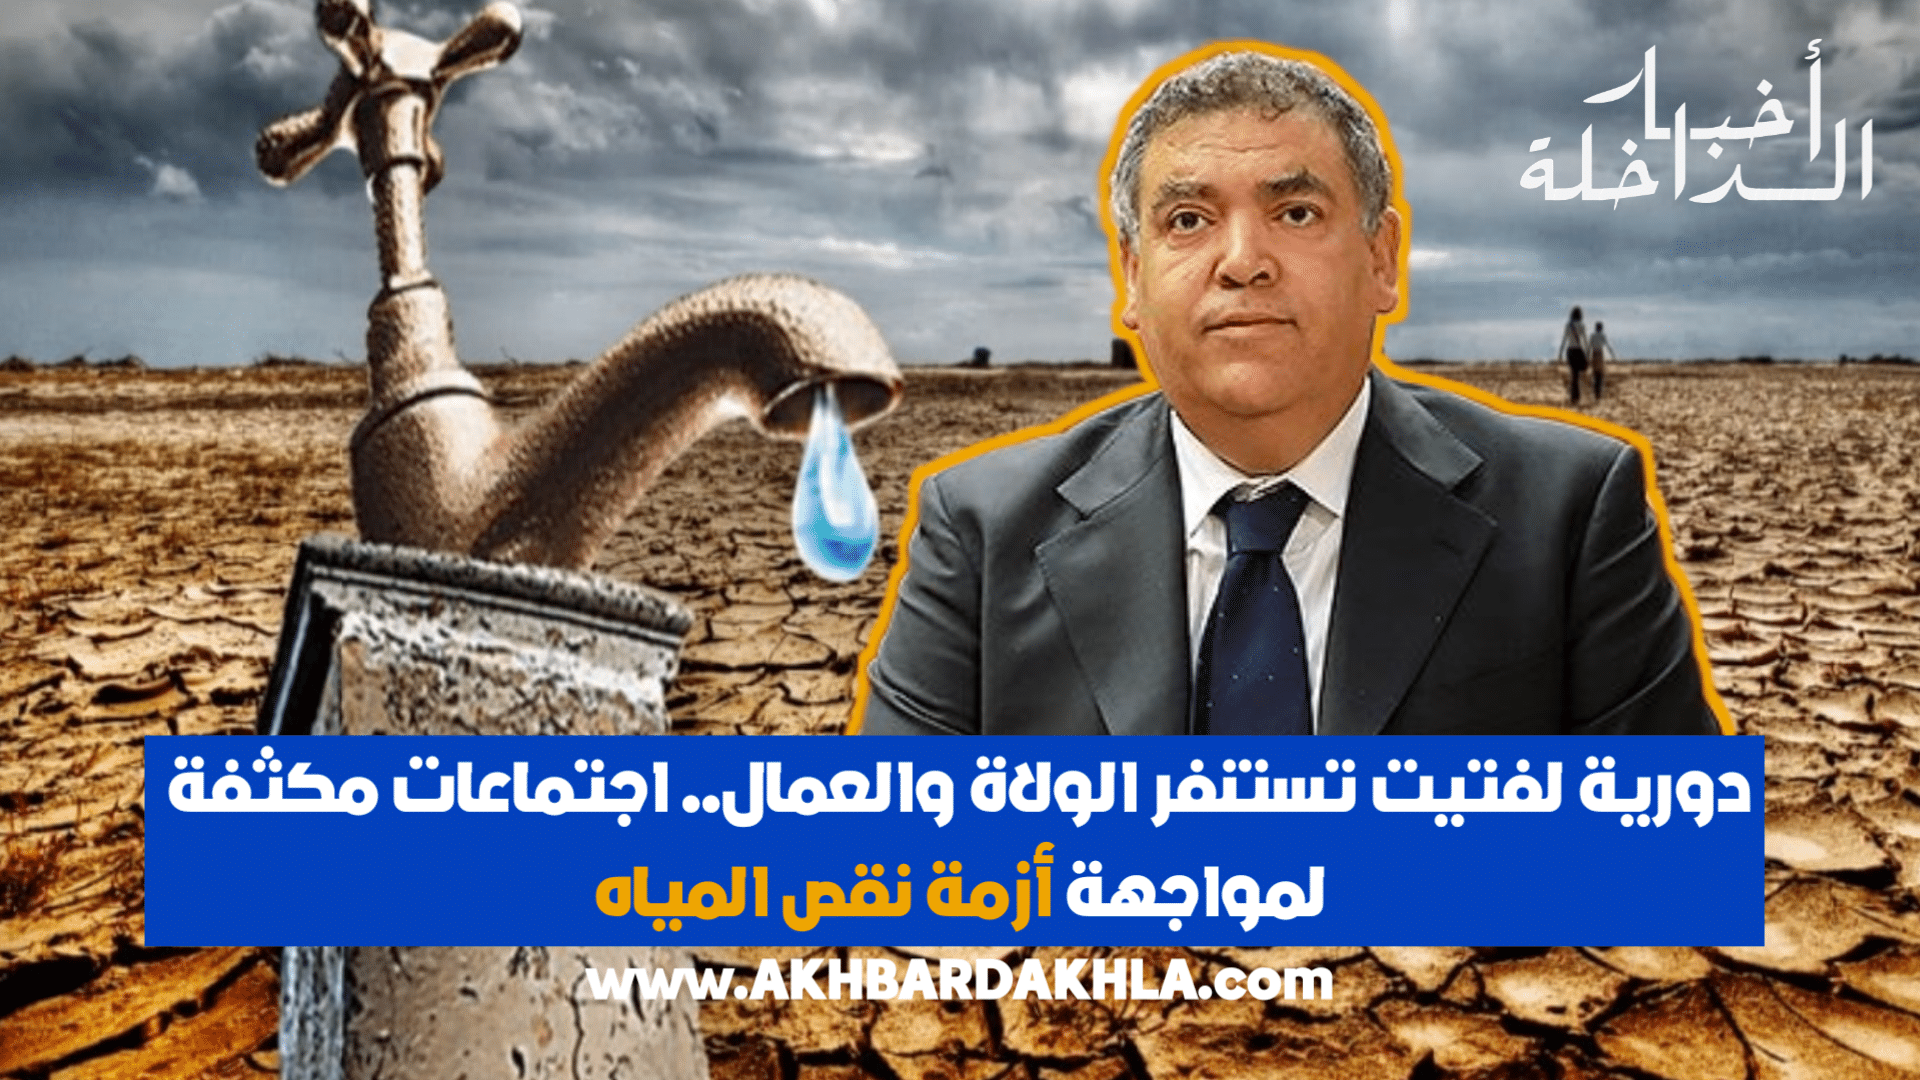 وزير الداخلية وأزمة نقص المياه